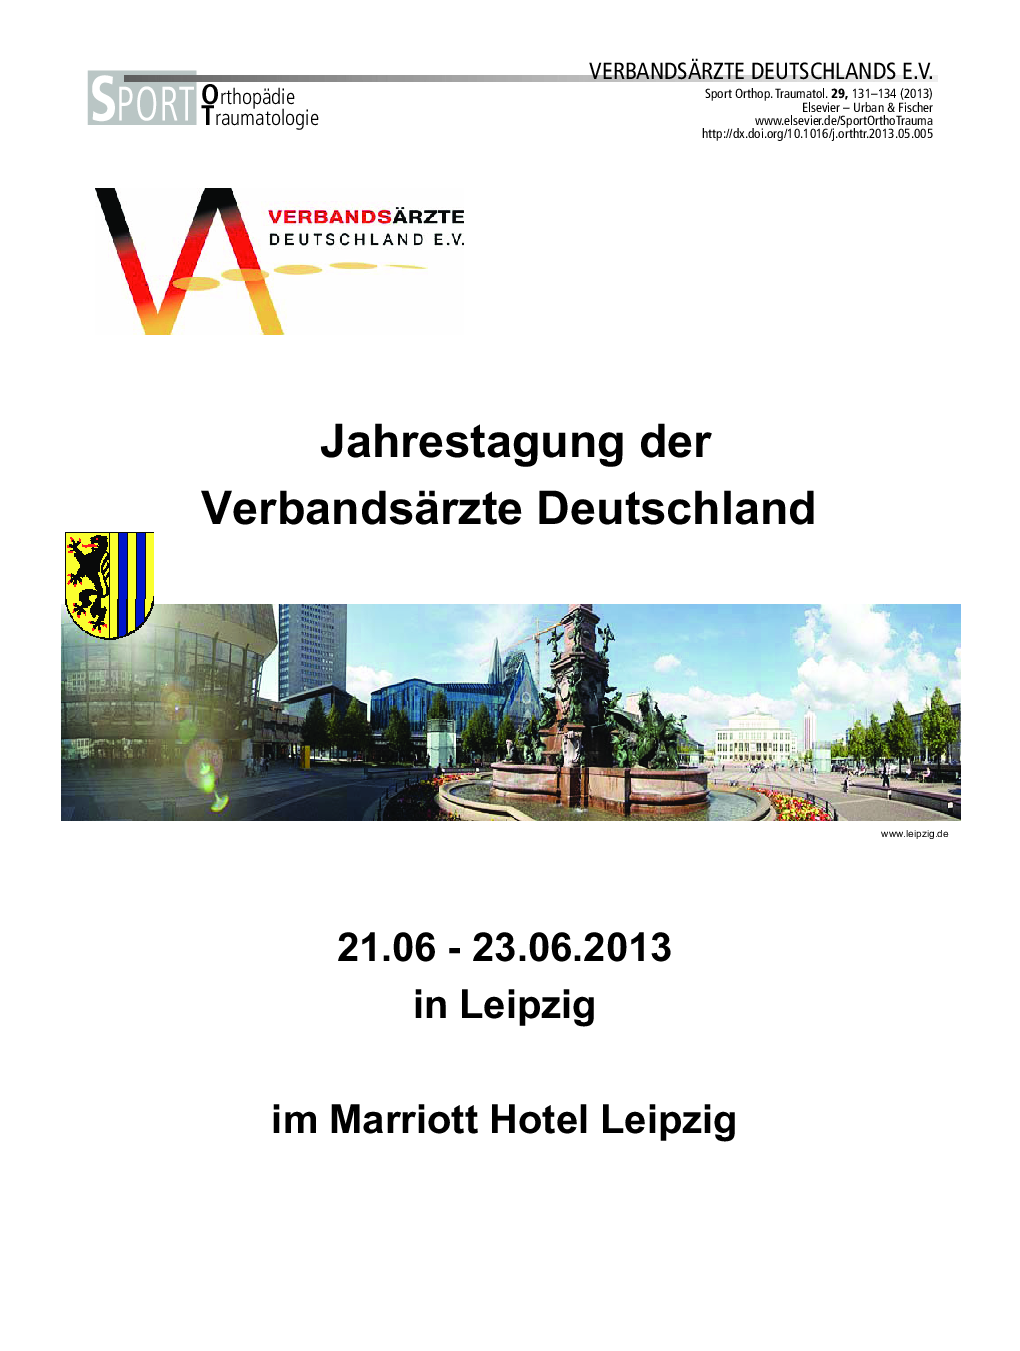 Jahrestagung der Verbandsärzte Deutschland 21.06 - 23.06.2013 in Leipzig